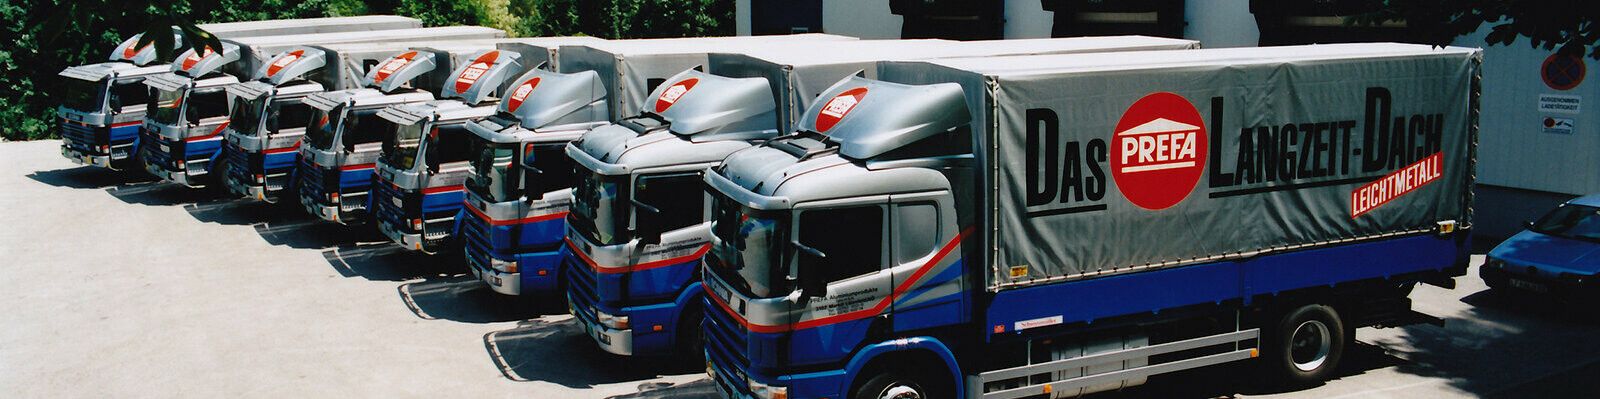 Huit anciens camions PREFA en bleu et argent avec logo PREFA alignés 